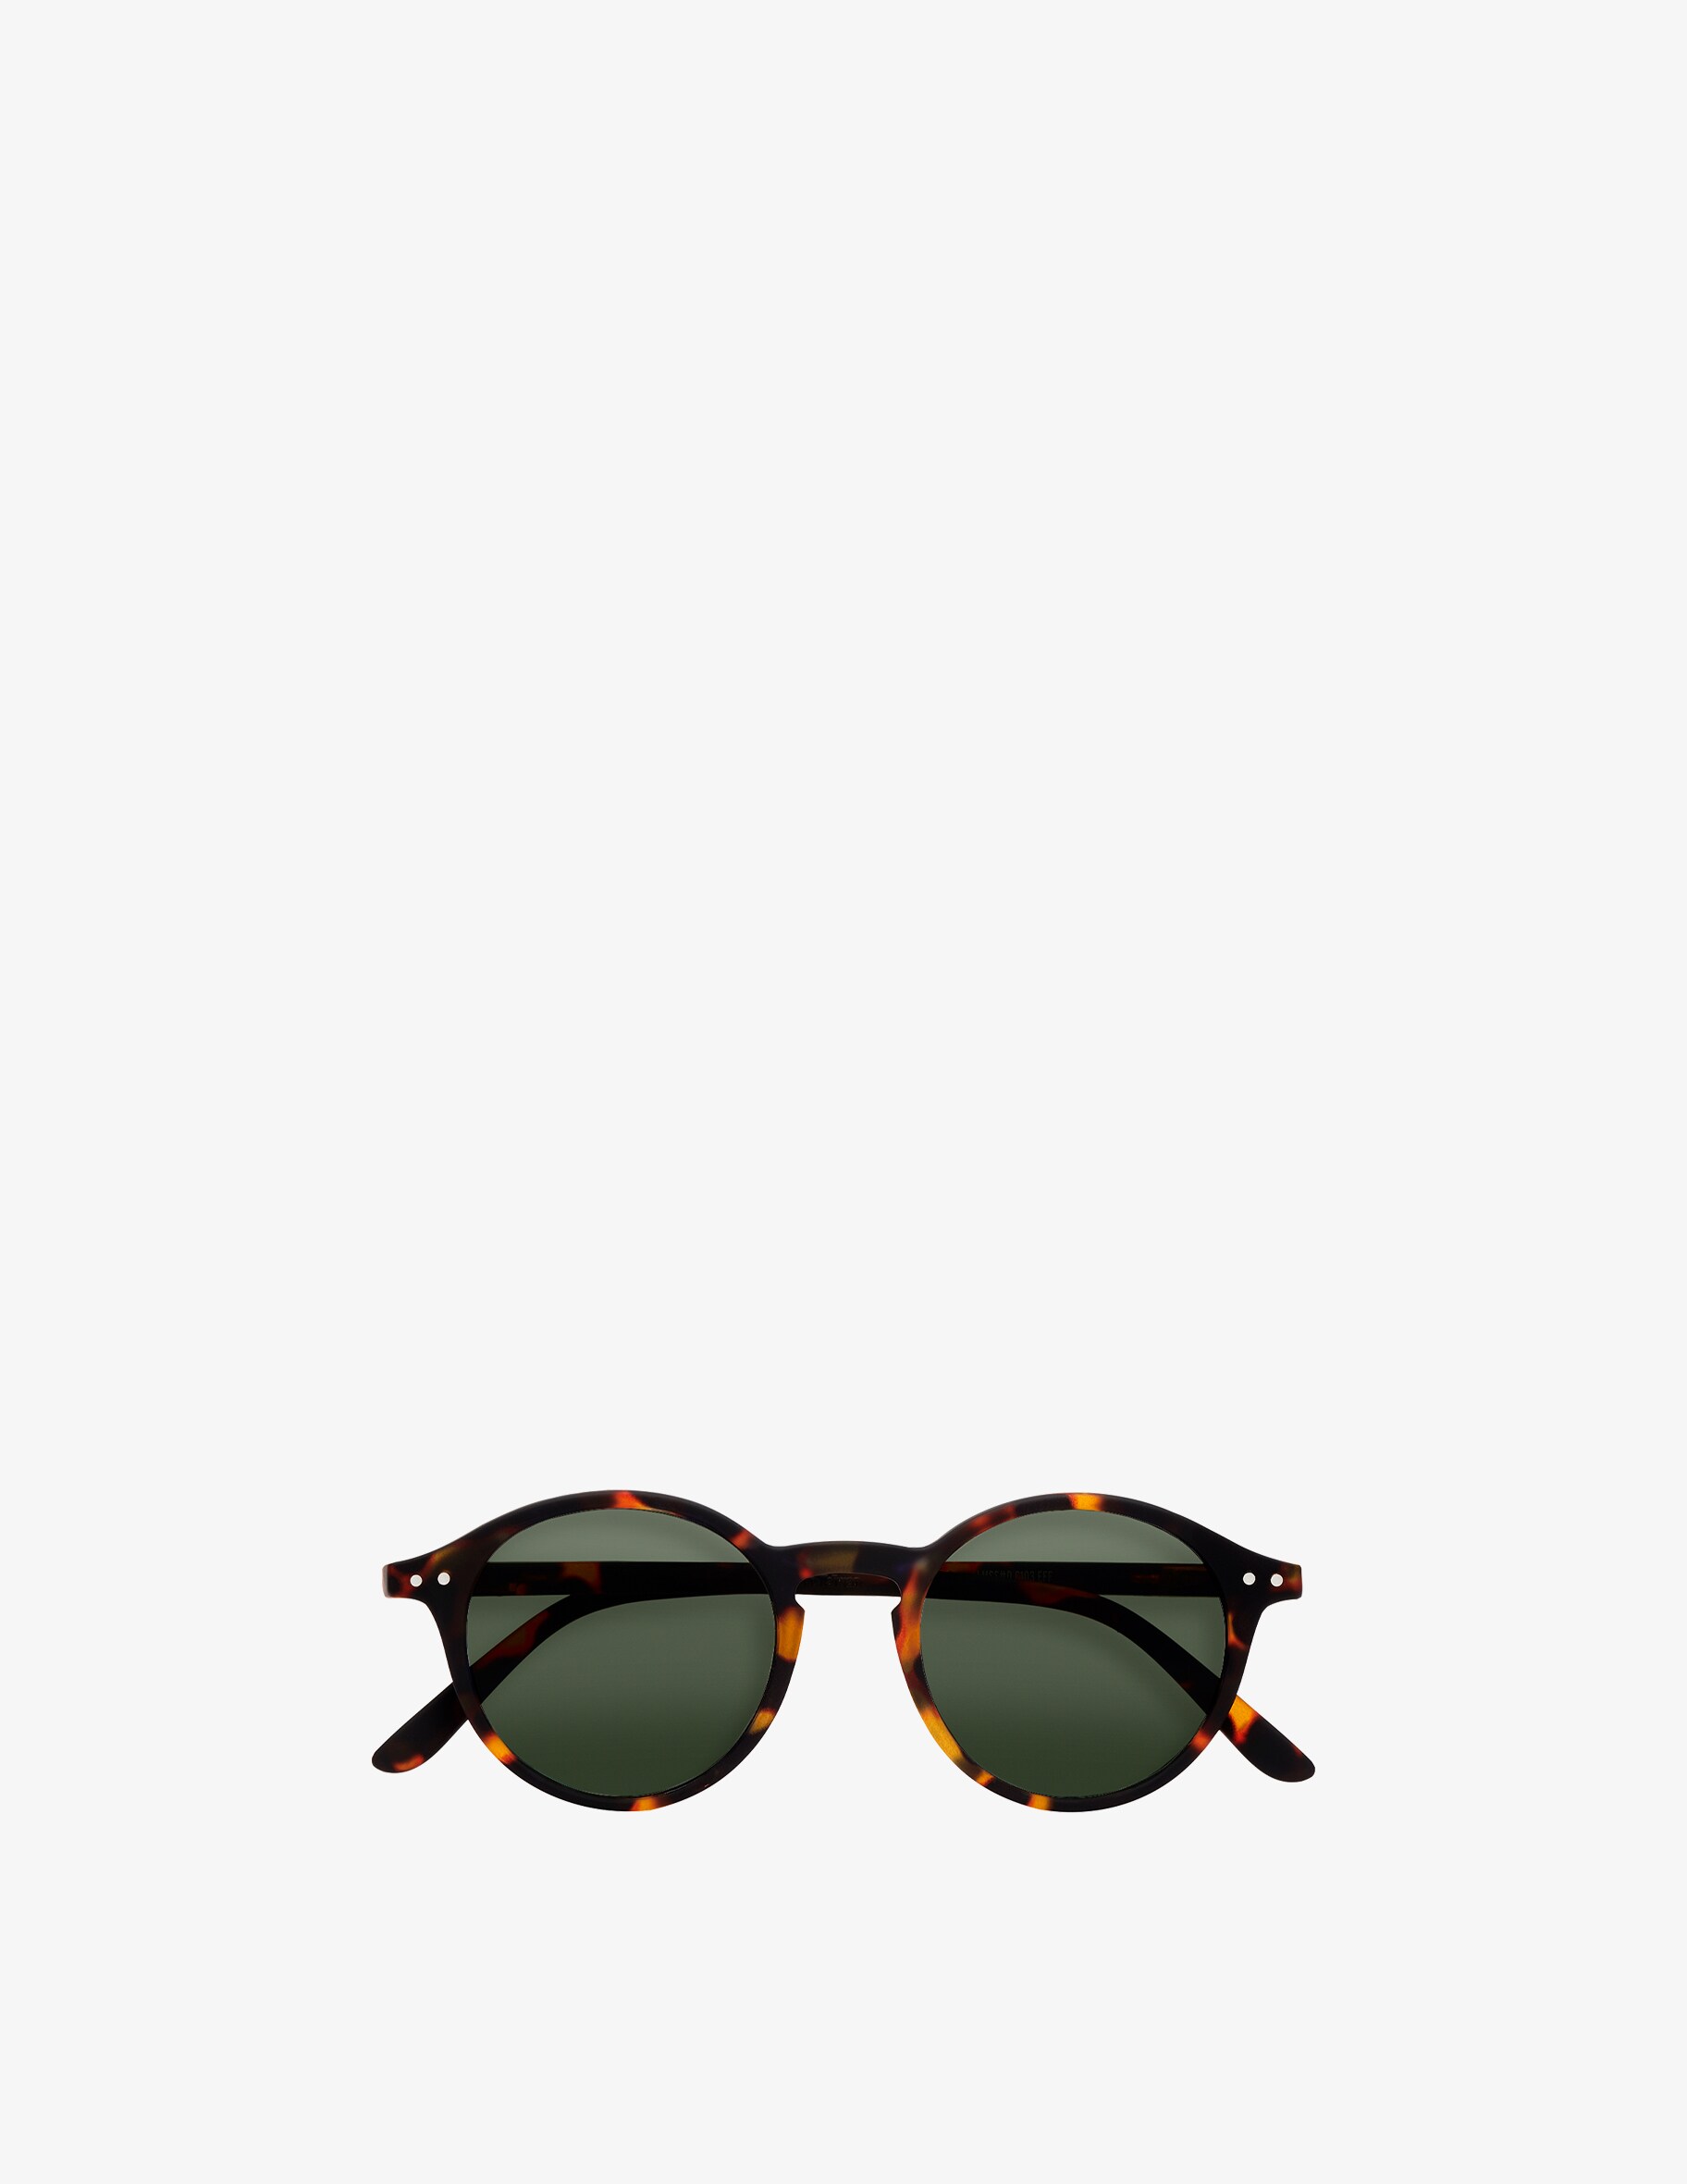 цена Солнцезащитные очки Модель #D Черепаховые Линзы Izipizi